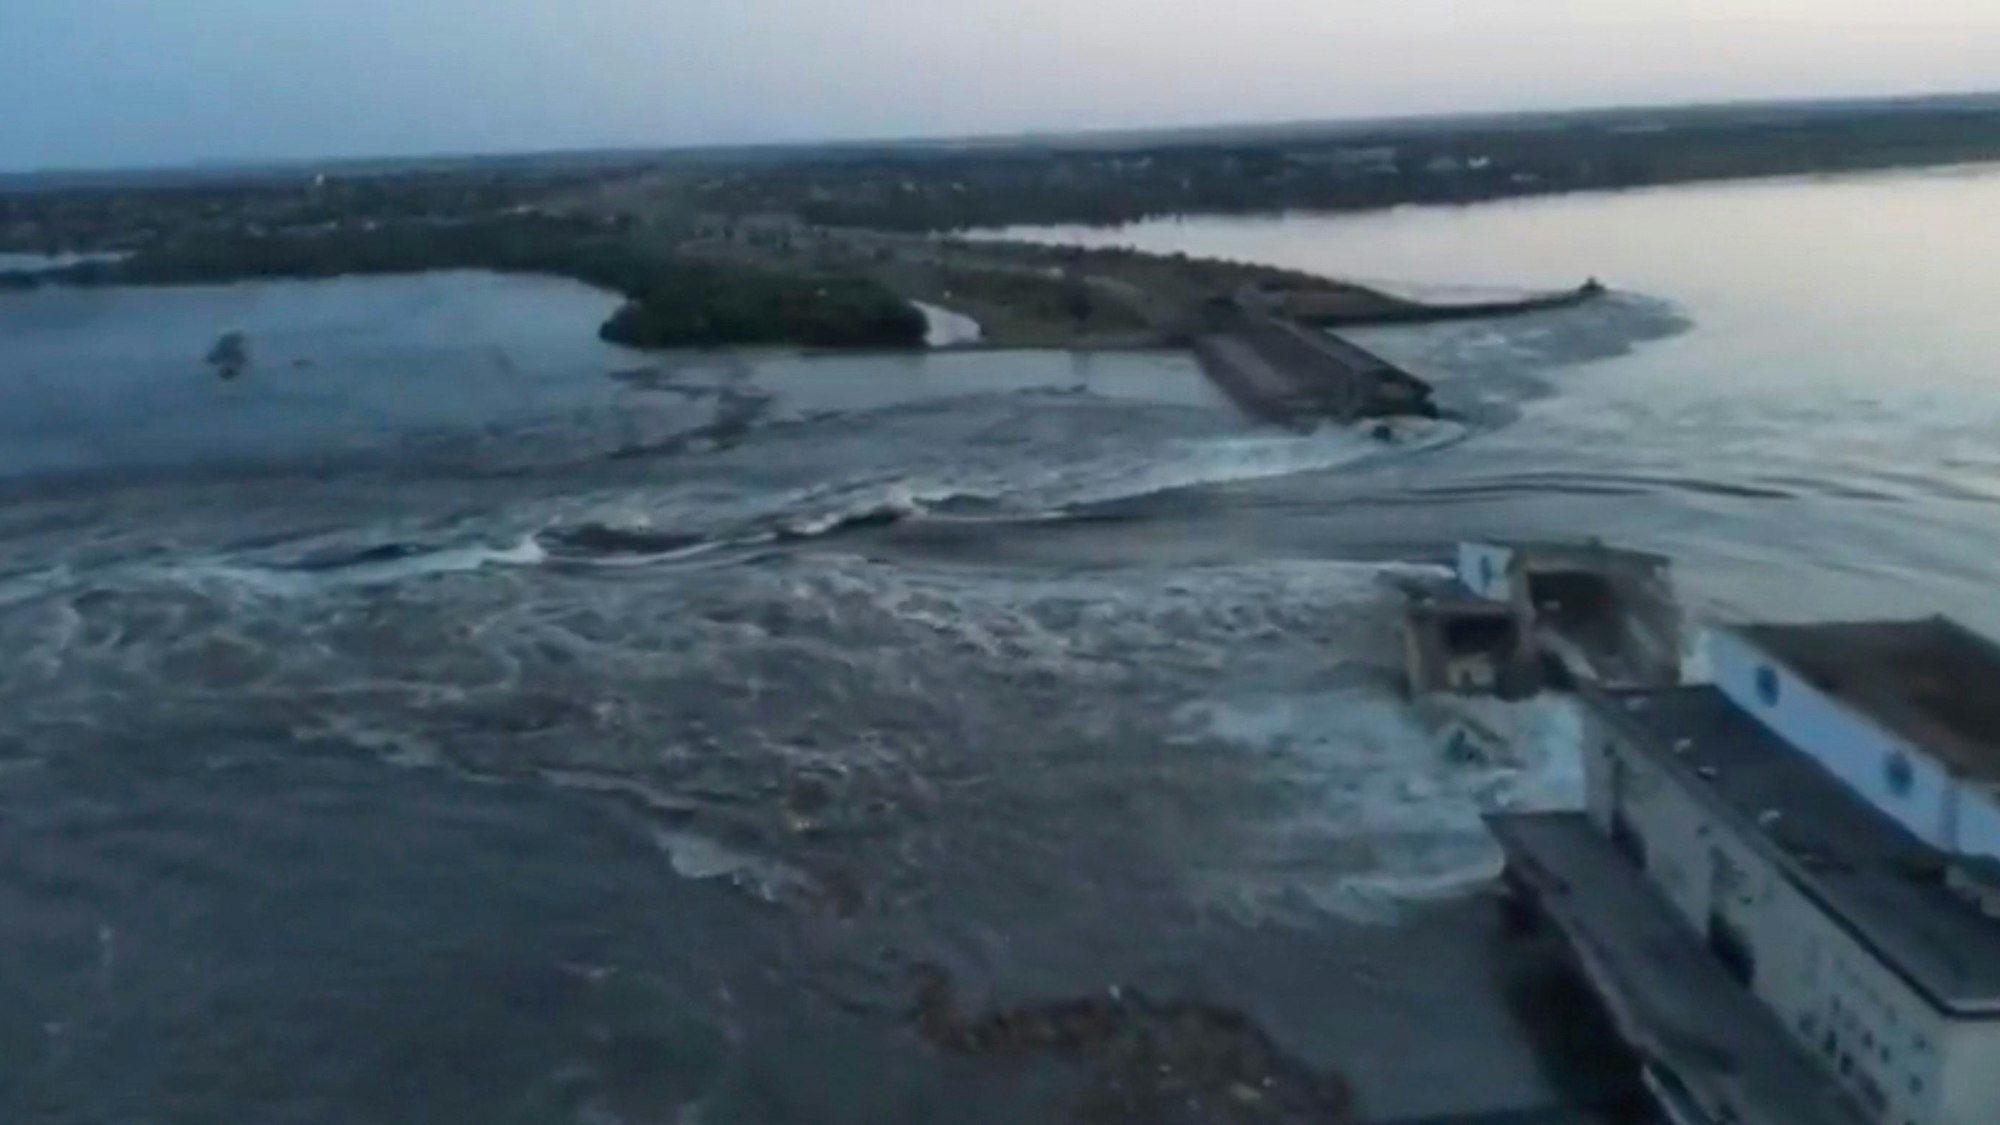 Kachowka-Staudamms am Dienstag, 6. Juni: Der wichtige Staudamm in der Region Cherson wurde zerstört und ukrainische Gebiete mit Wasser geflutet. Eine Ton-Aufnahme soll nun eine russische Sabotage beweisen.